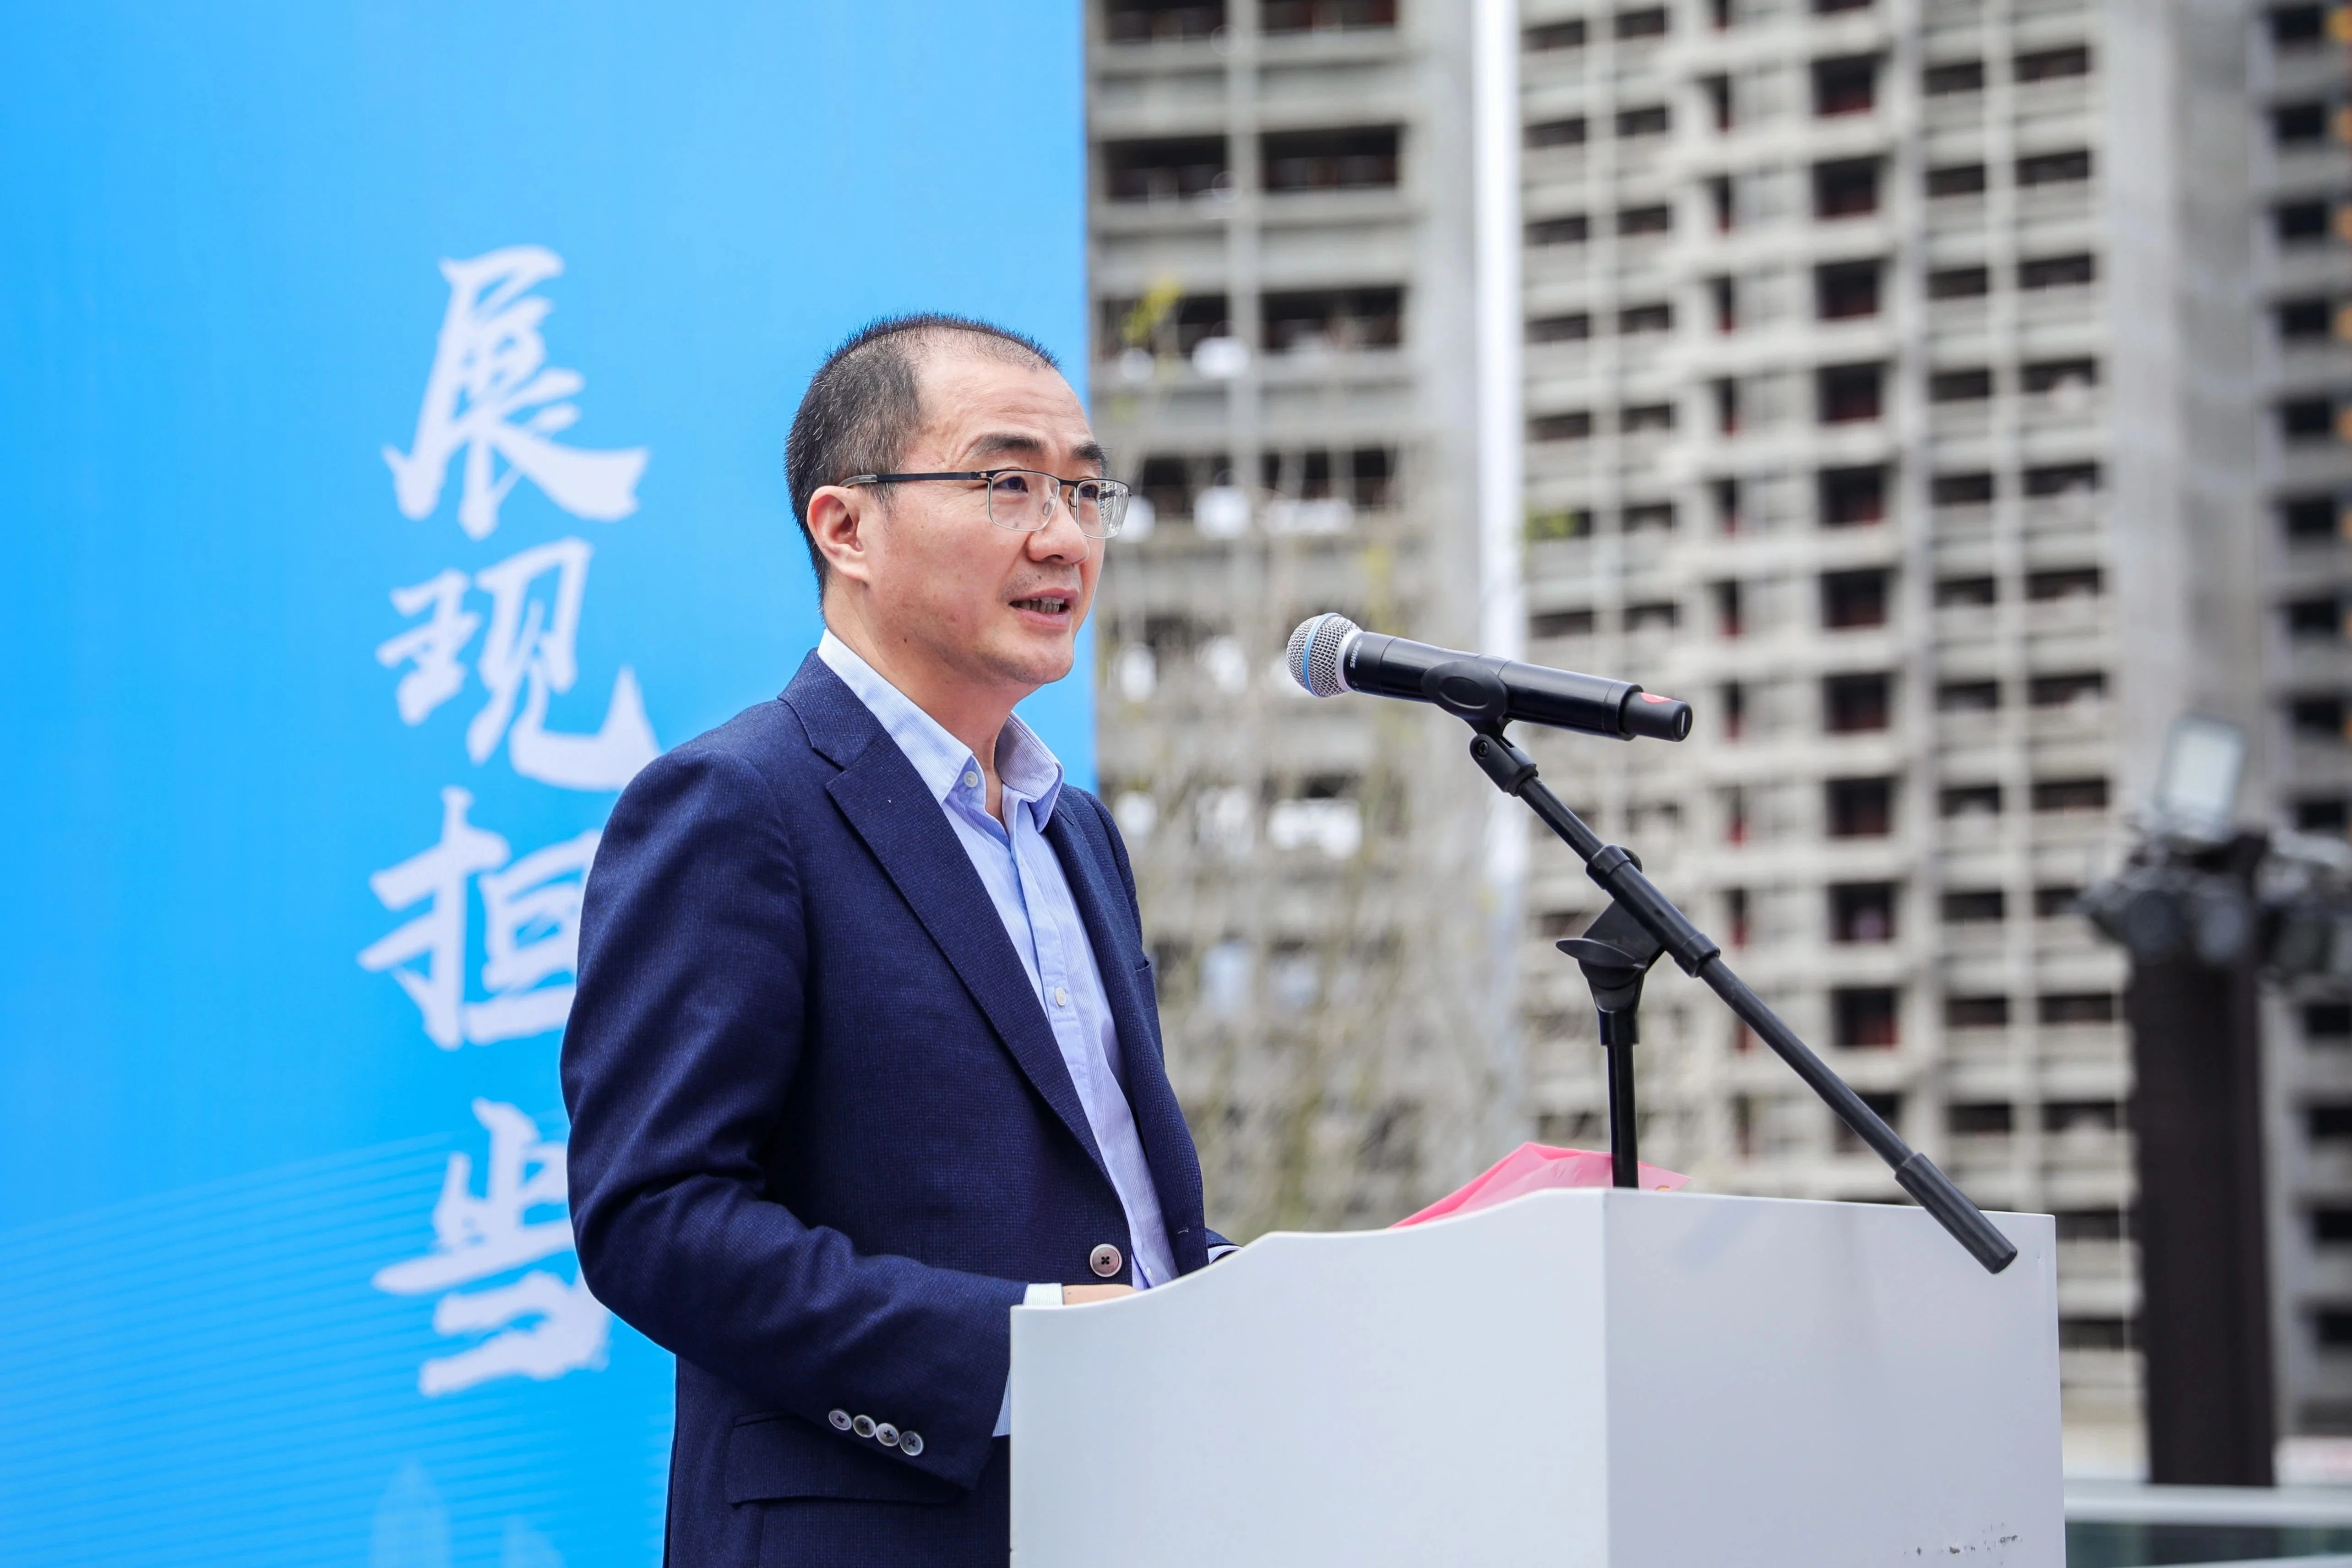 华润置地深圳大区总经理蒋慕川表示,通过本次协议签署,将进一步巩固